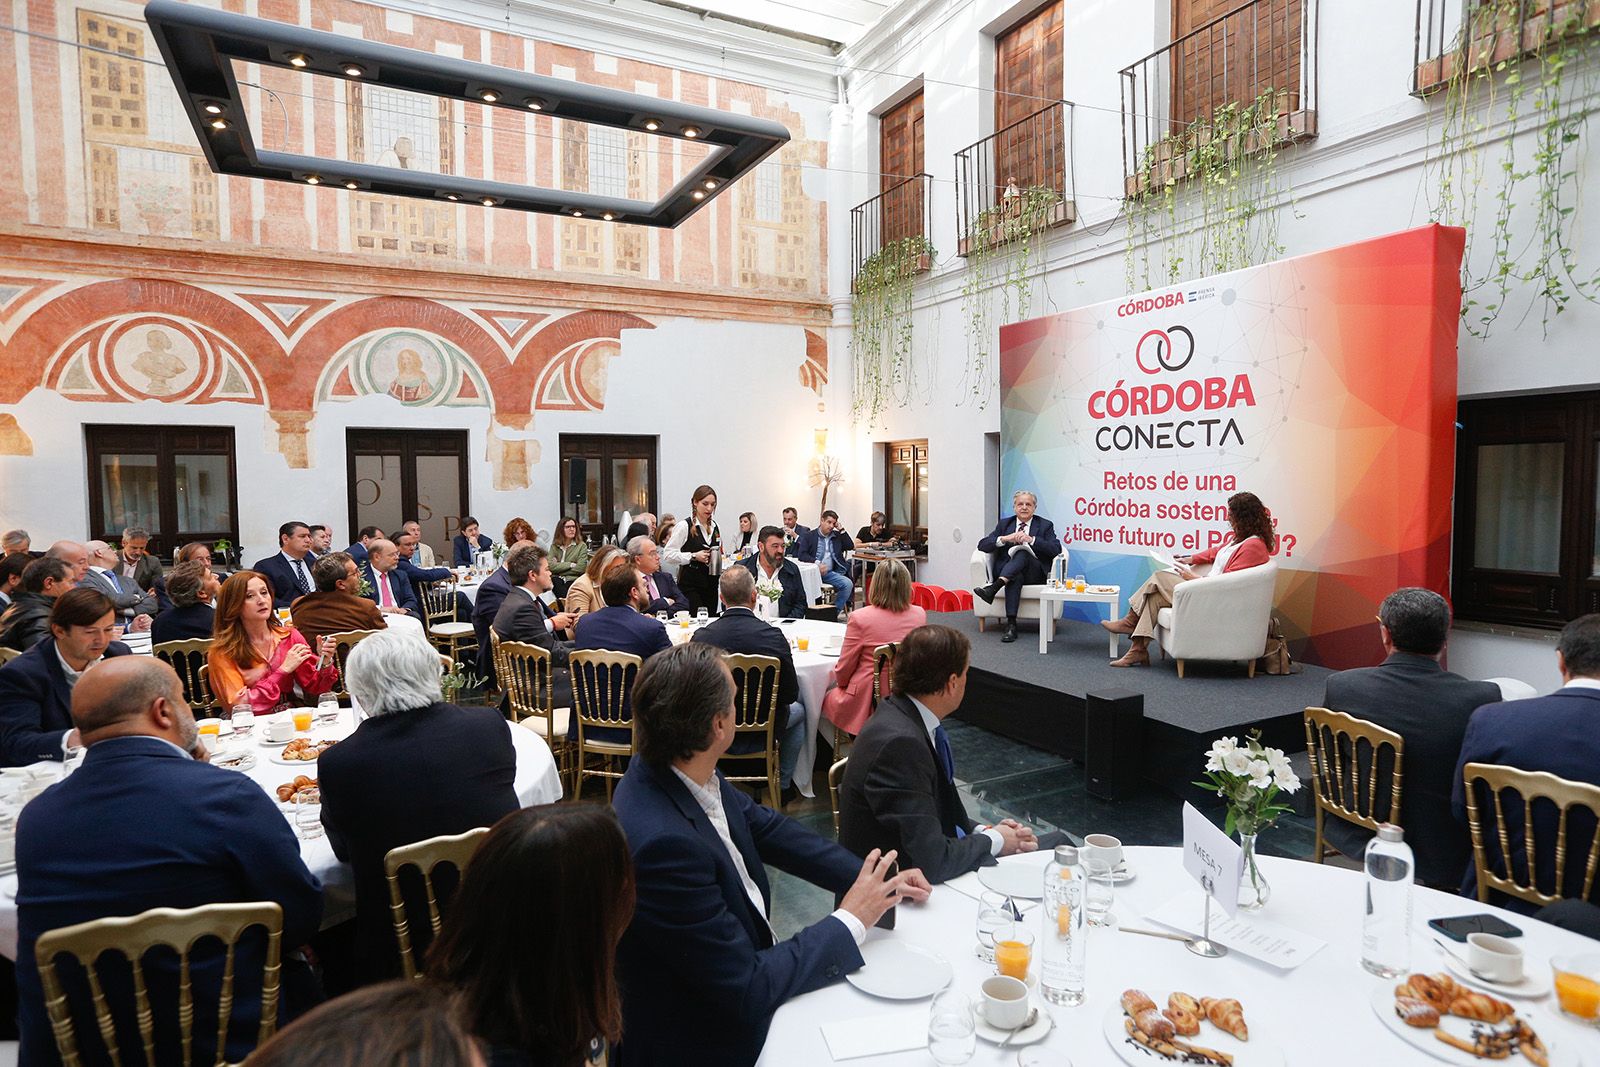 Córdoba Conecta analiza los retos de la Córdoba sostenible desde el punto de vista urbanístico